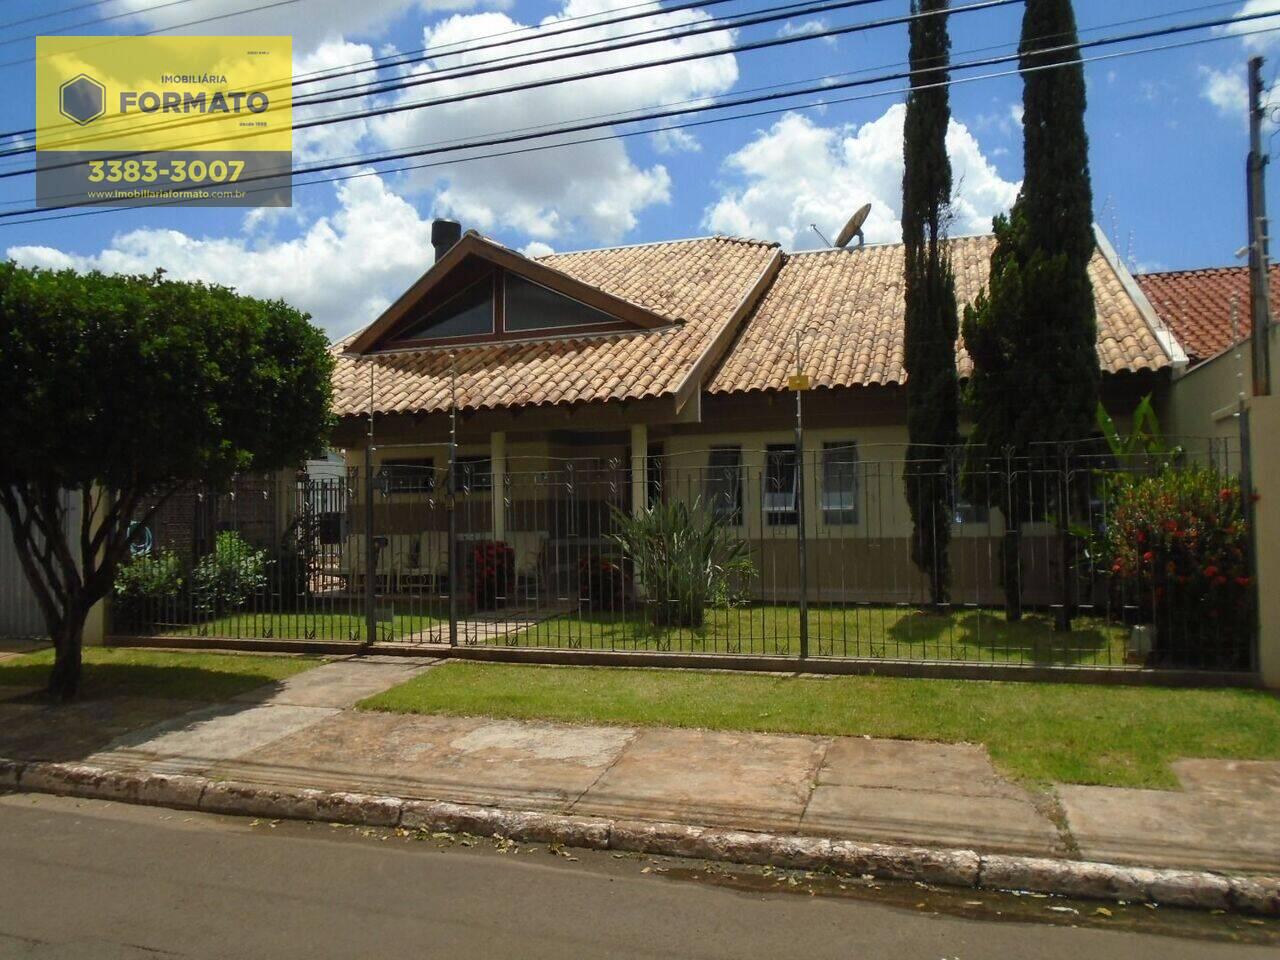 Casa Vila Vilas Boas, Campo Grande - MS